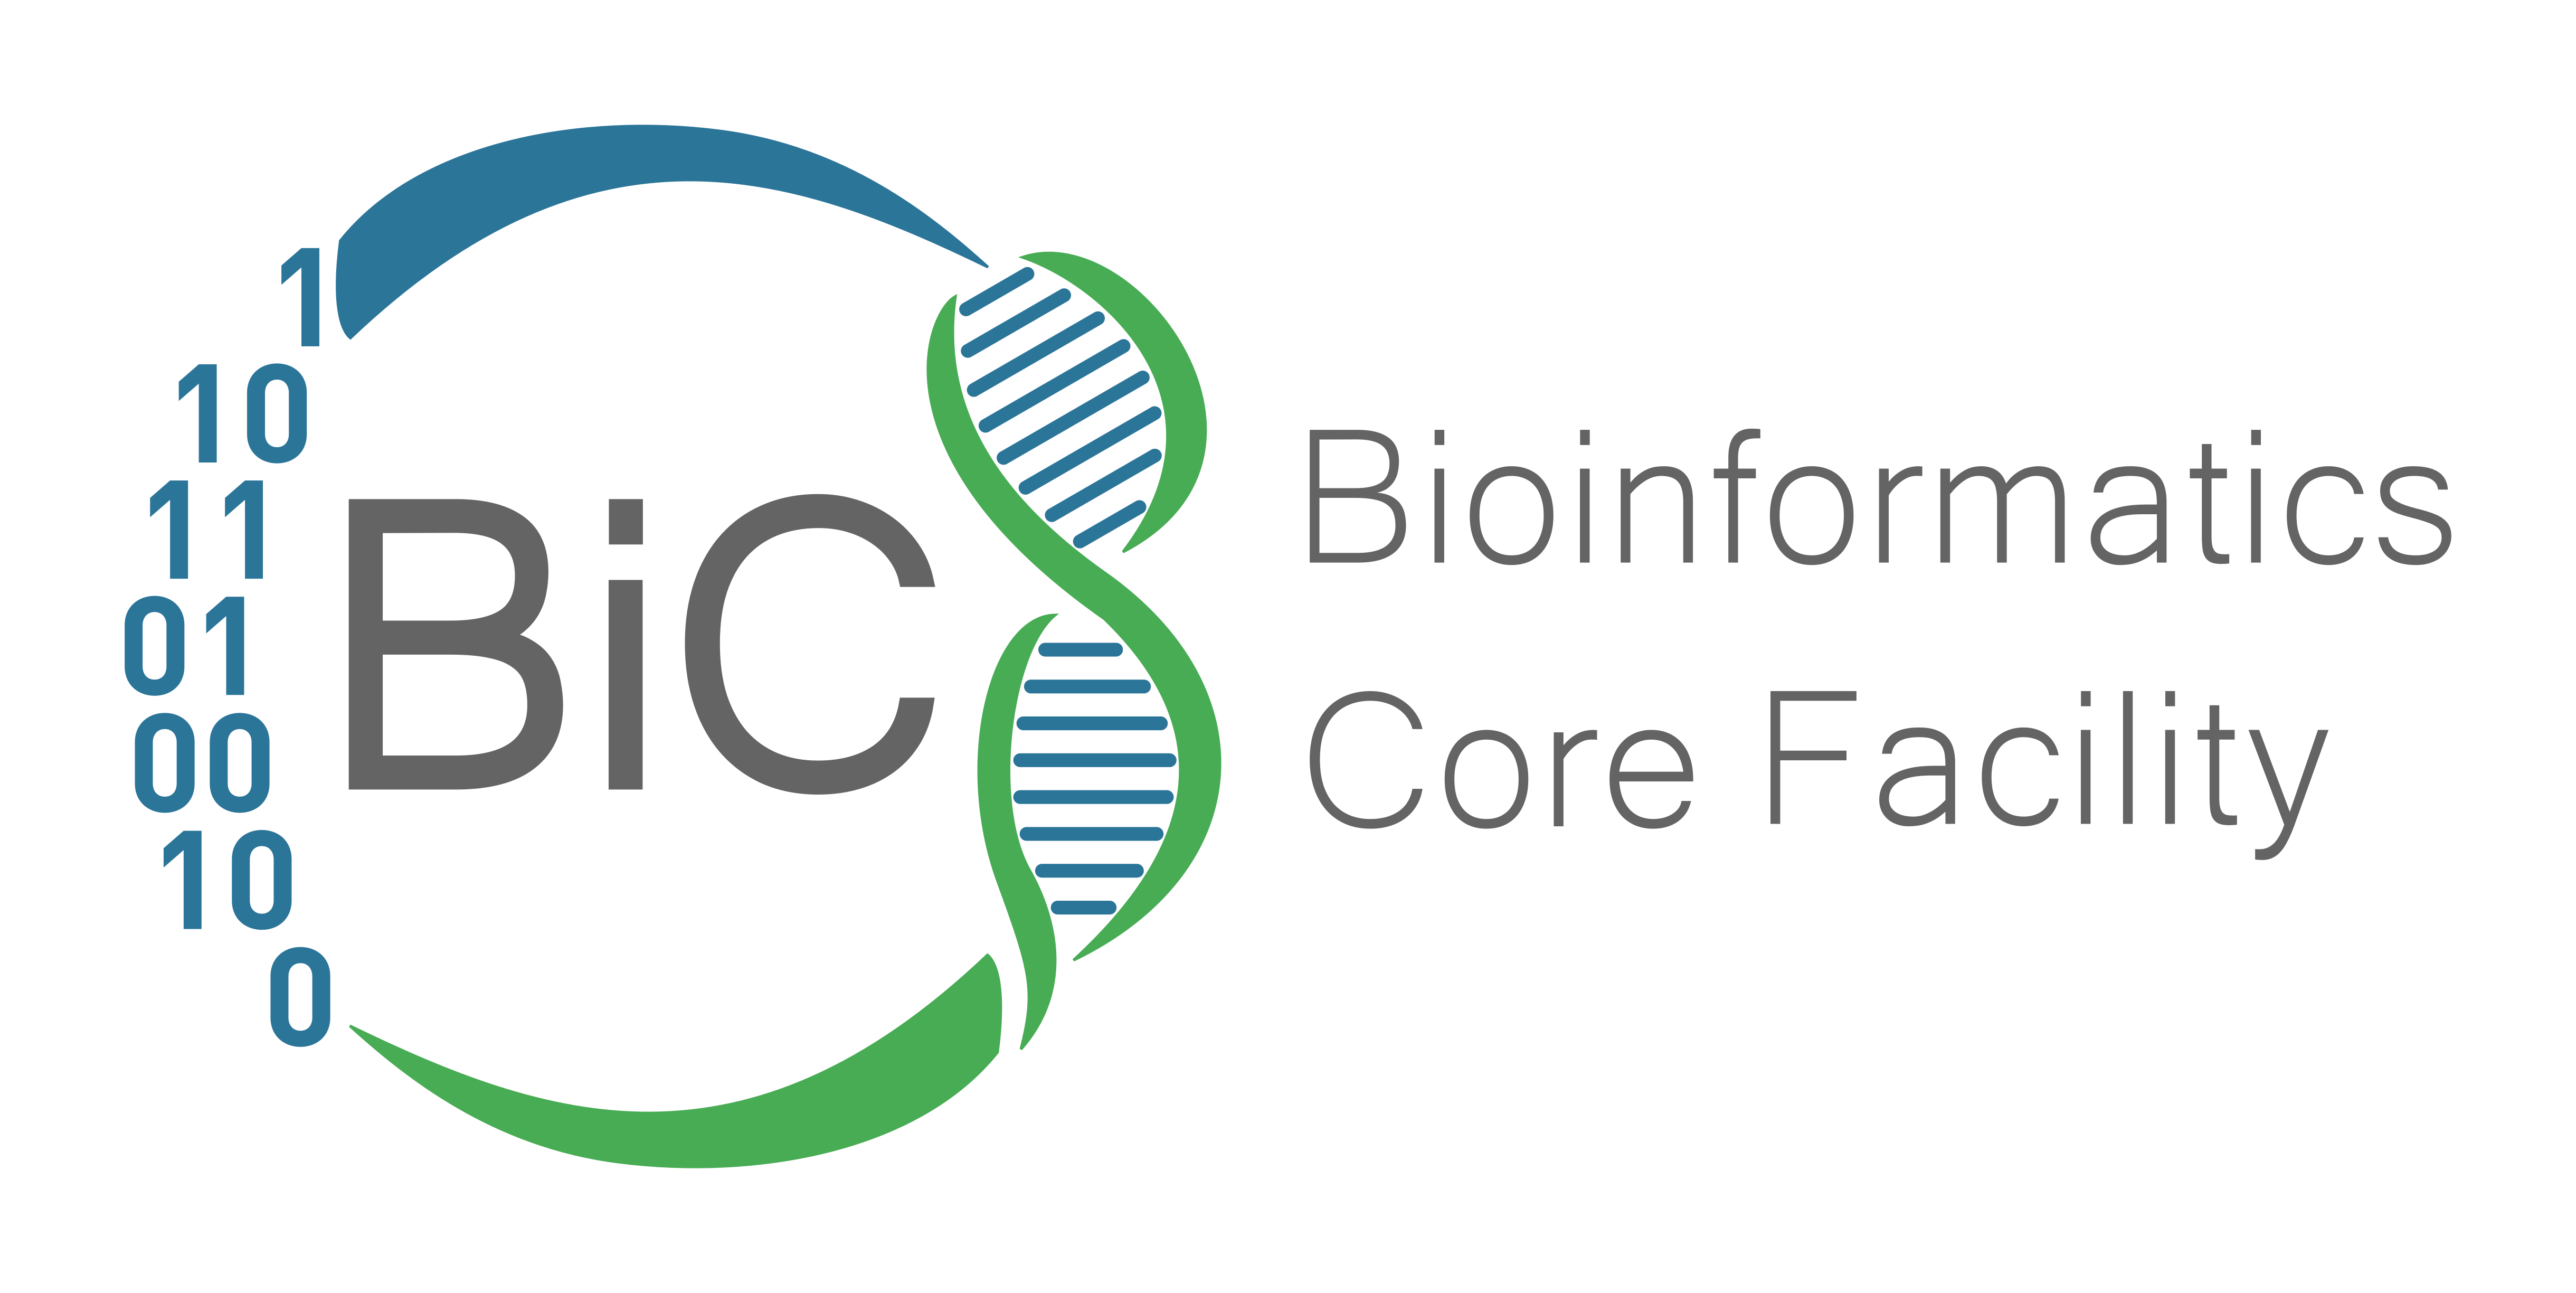 Bioinformatics Core Facility